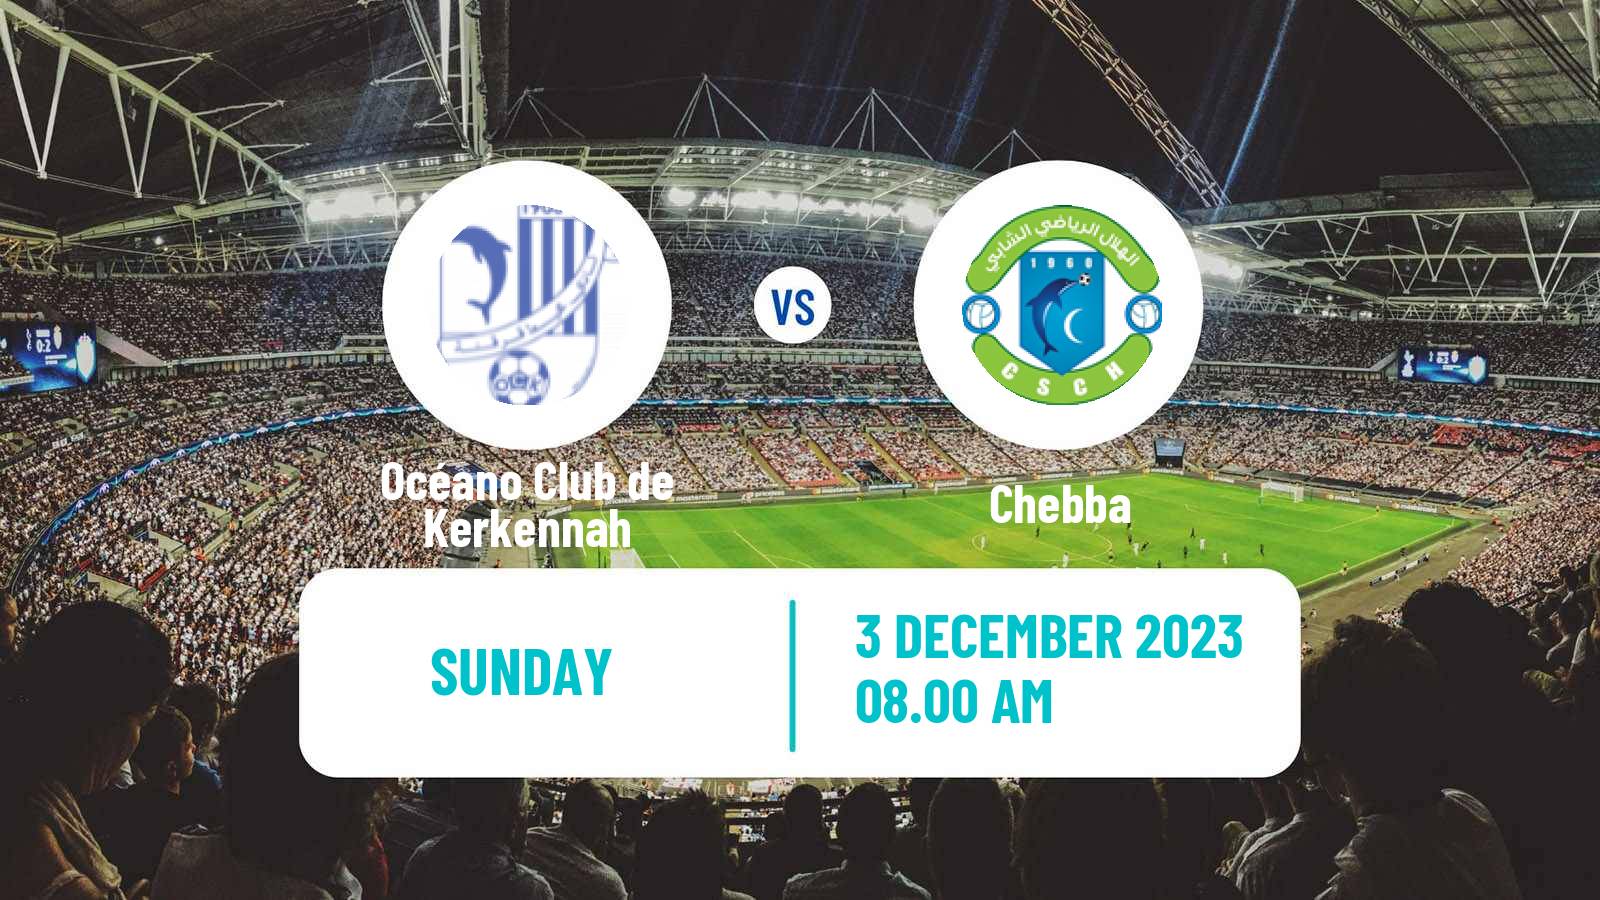 Soccer Tunisian Ligue 2 Océano Club de Kerkennah - Chebba